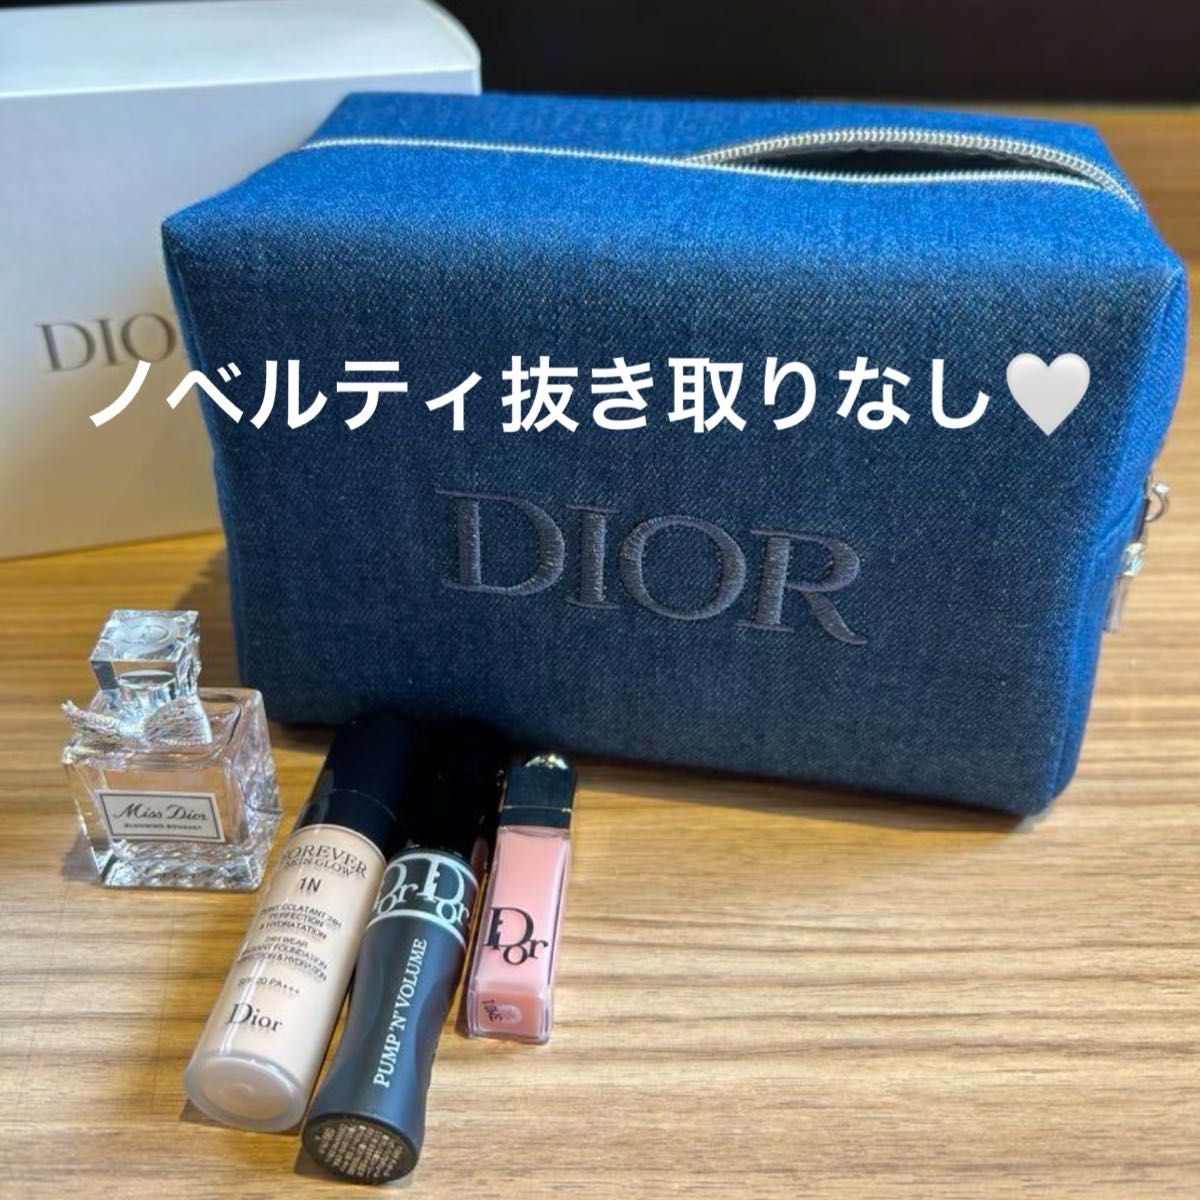 デニム Dior ポーチ 香水 マスカラ マキシマイザー ファンデーション